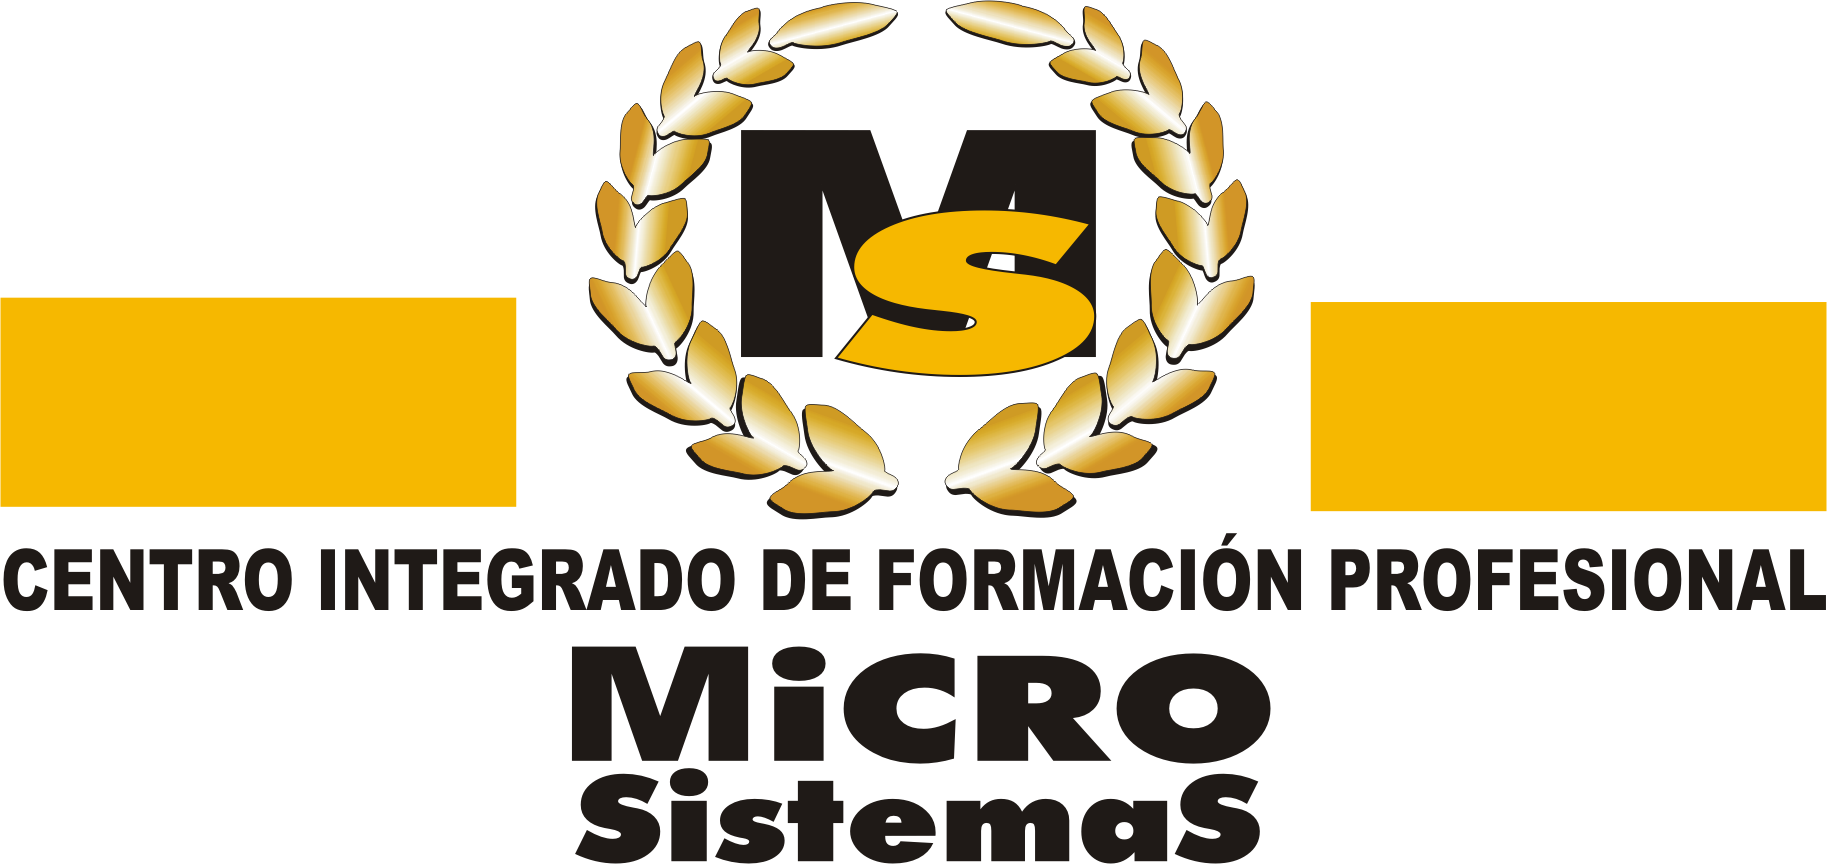 Microsistemas